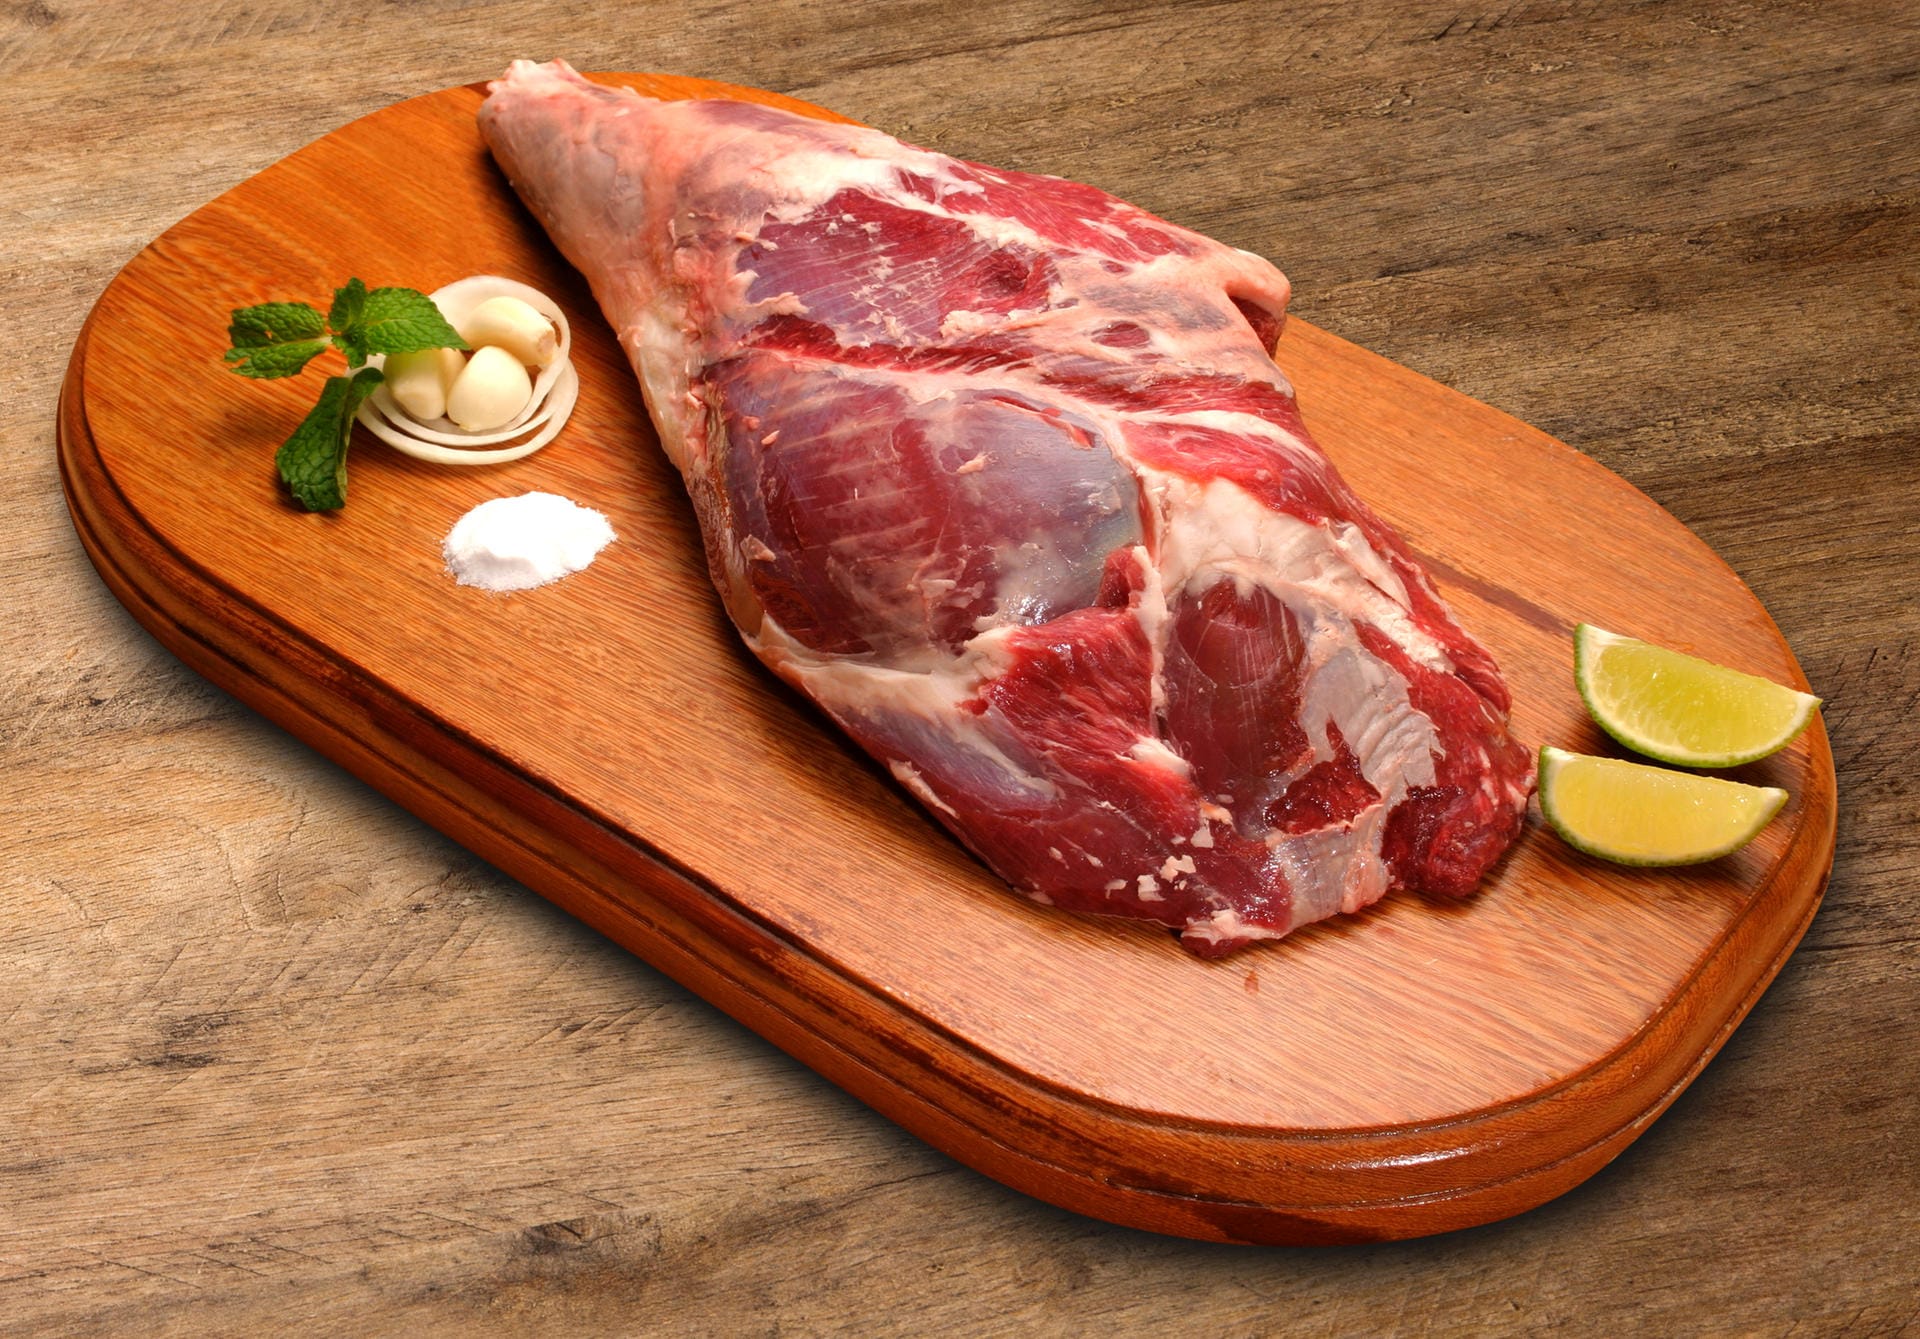 Fett und Knochen gehören dazu: Ob Eisbein, Haspel, Knöchla oder Haxn - die Vorder- oder Hinterhaxe vom Schwein wird seit Jahrhunderten in Deutschland zubereitet.